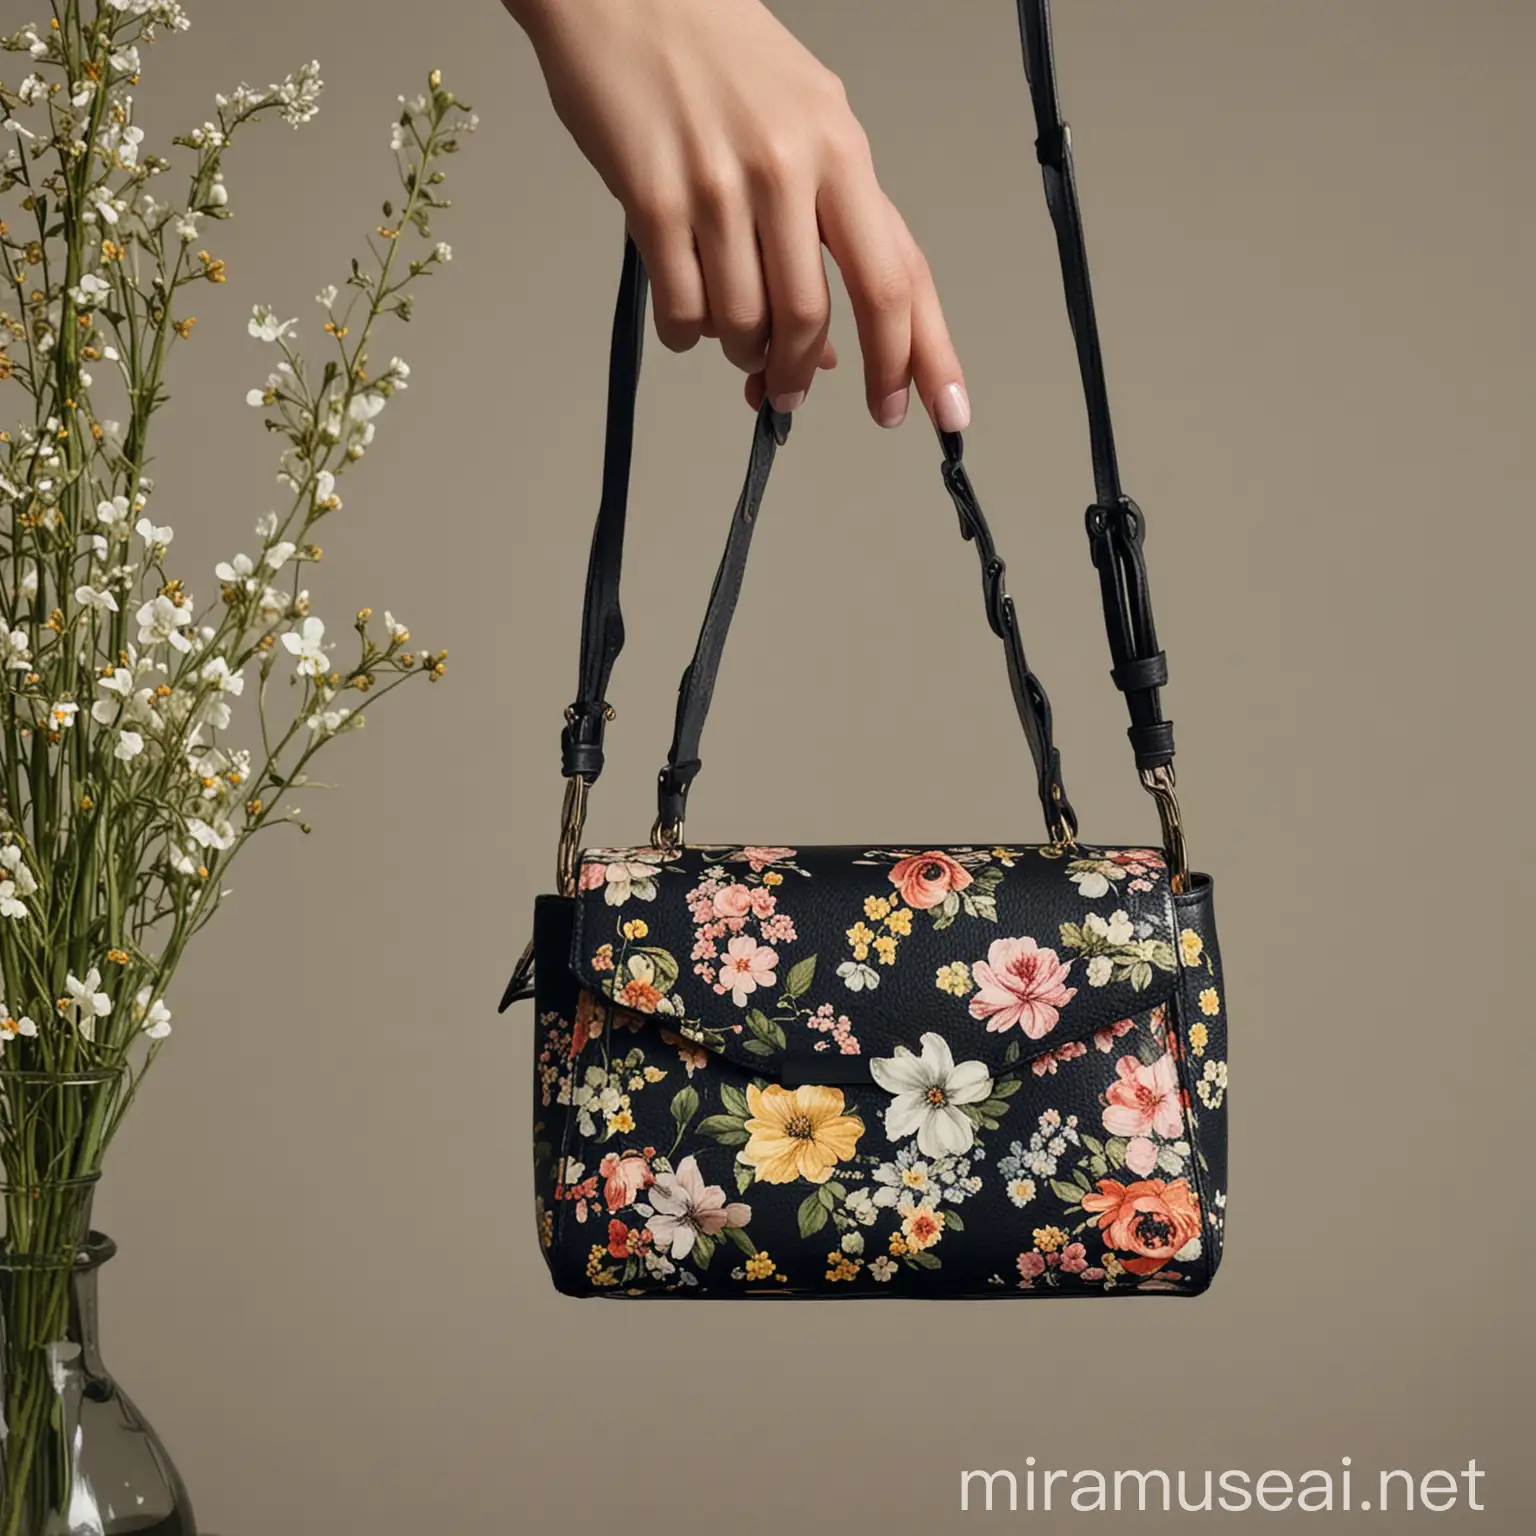 floral, nostalgia, erdem aesthetic mini bag